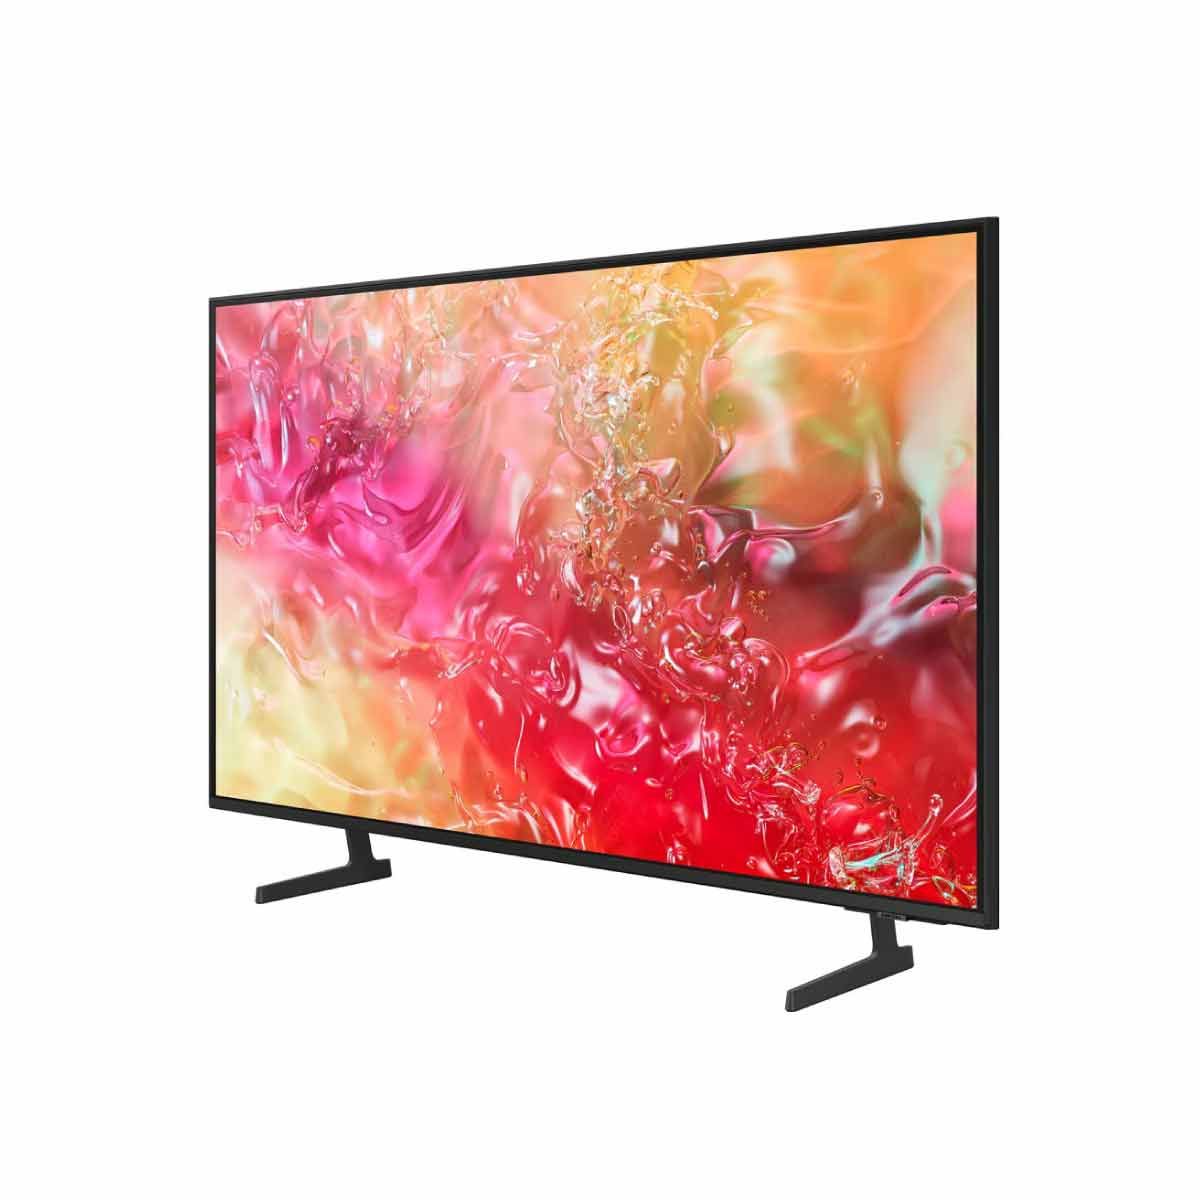 SAMSUNG LED Crystal UHD Smart TV 4K รุ่น UA55DU7700KXXT Smart One Remote ขนาด 55 นิ้ว